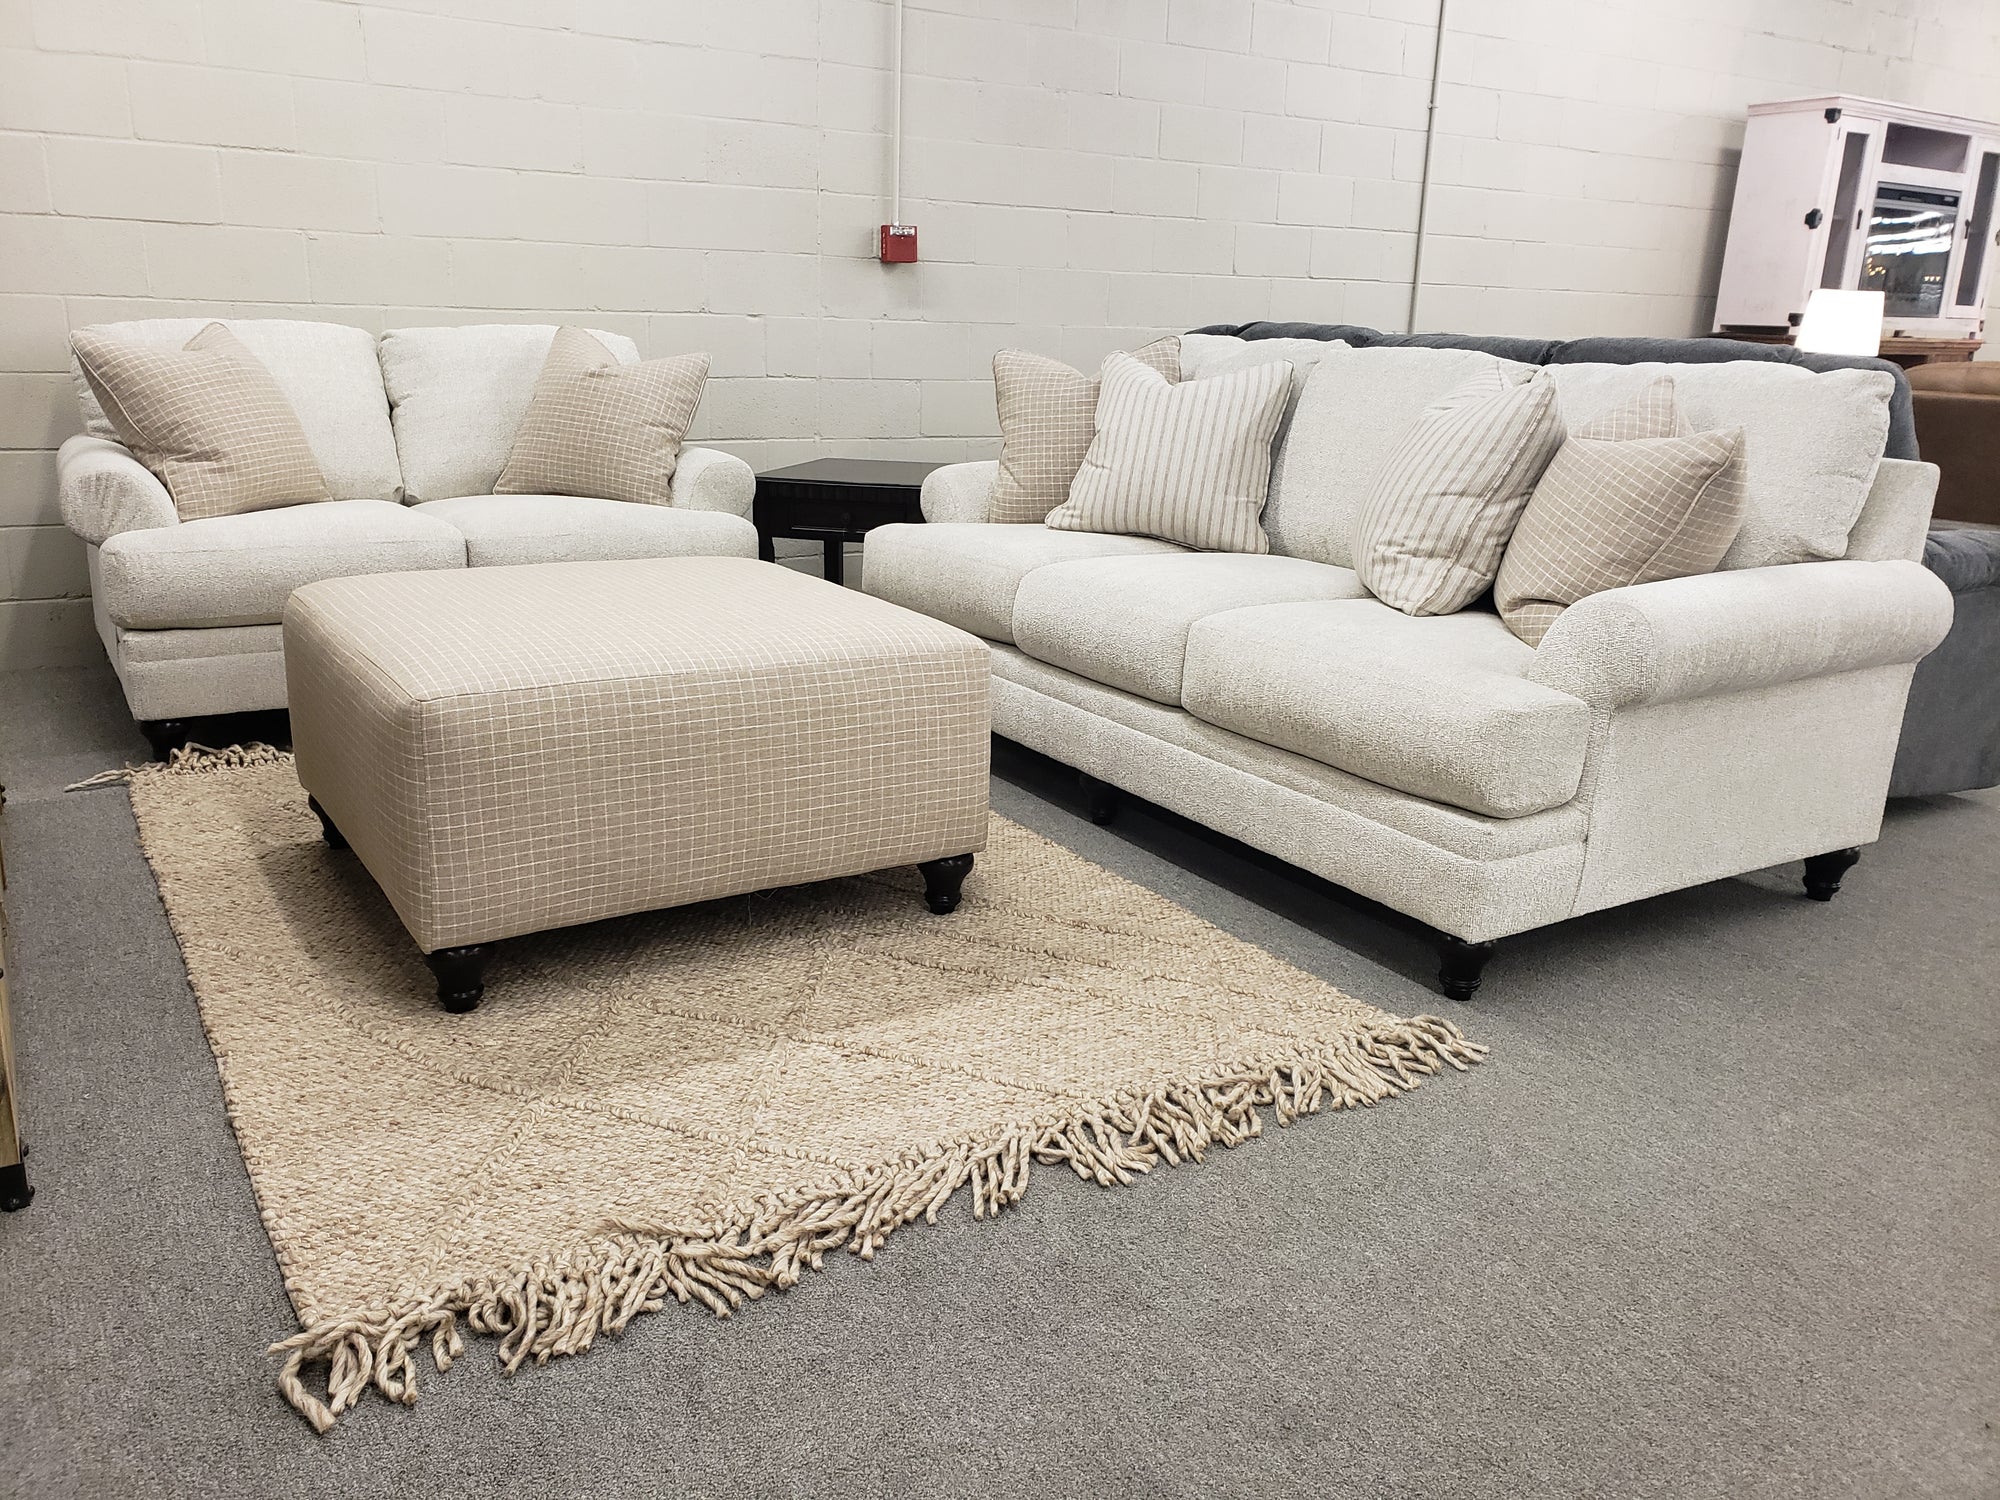 468 FI-A Fabric Sofa and Loveseat